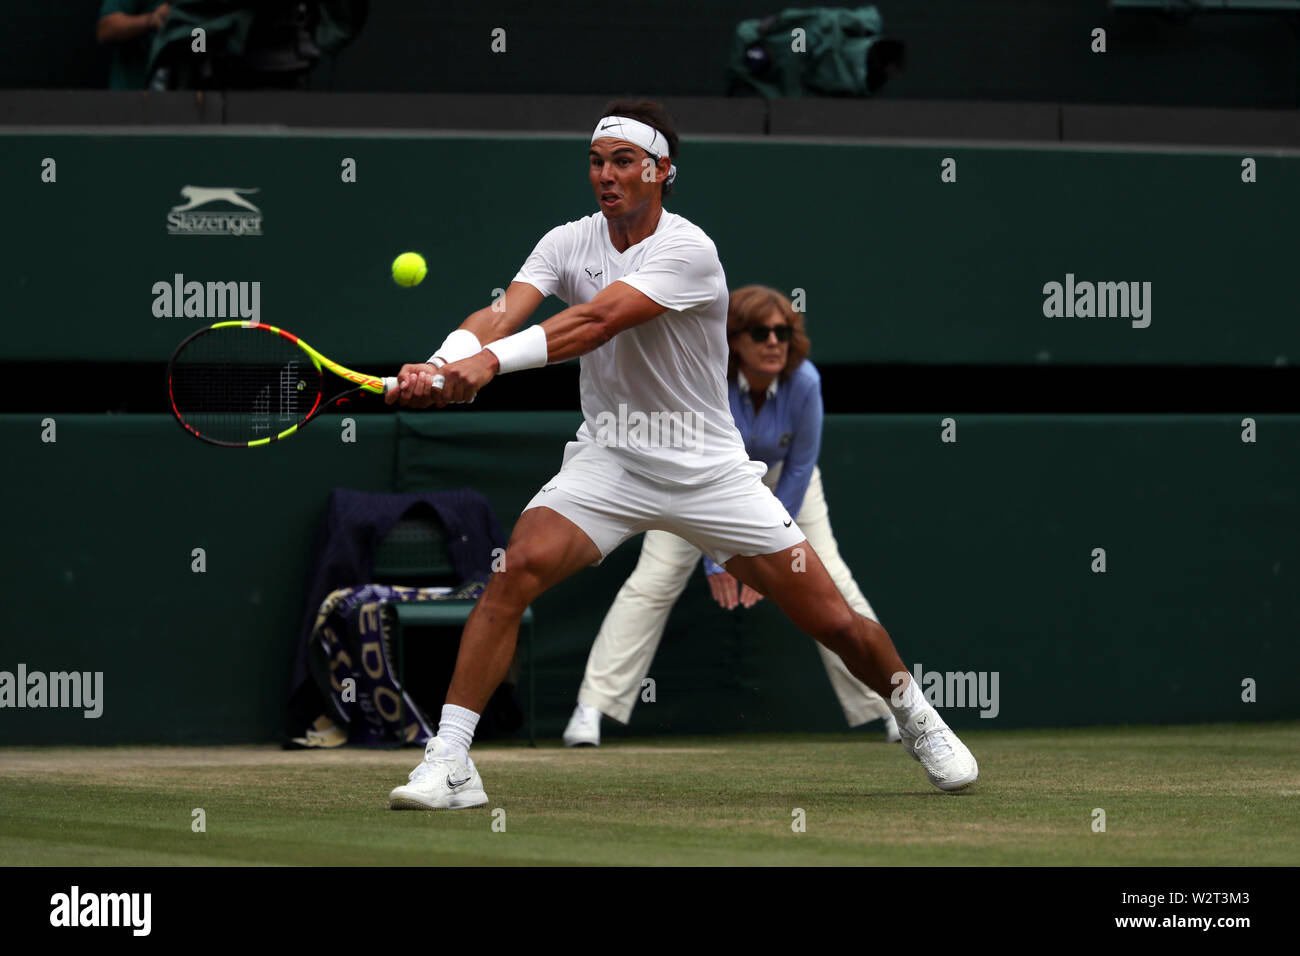 Wimbledon, UK. 10. Juli 2019. Rafael Nadal während sein Viertelfinale gegen Sam Querrey aus den USA in Wimbledon heute. Nadal gewann in den geraden Sätzen im Halbfinale, wo er Roger Federer Credit: Adam Stoltman/Alamy Live News Gesicht voraus Stockfoto